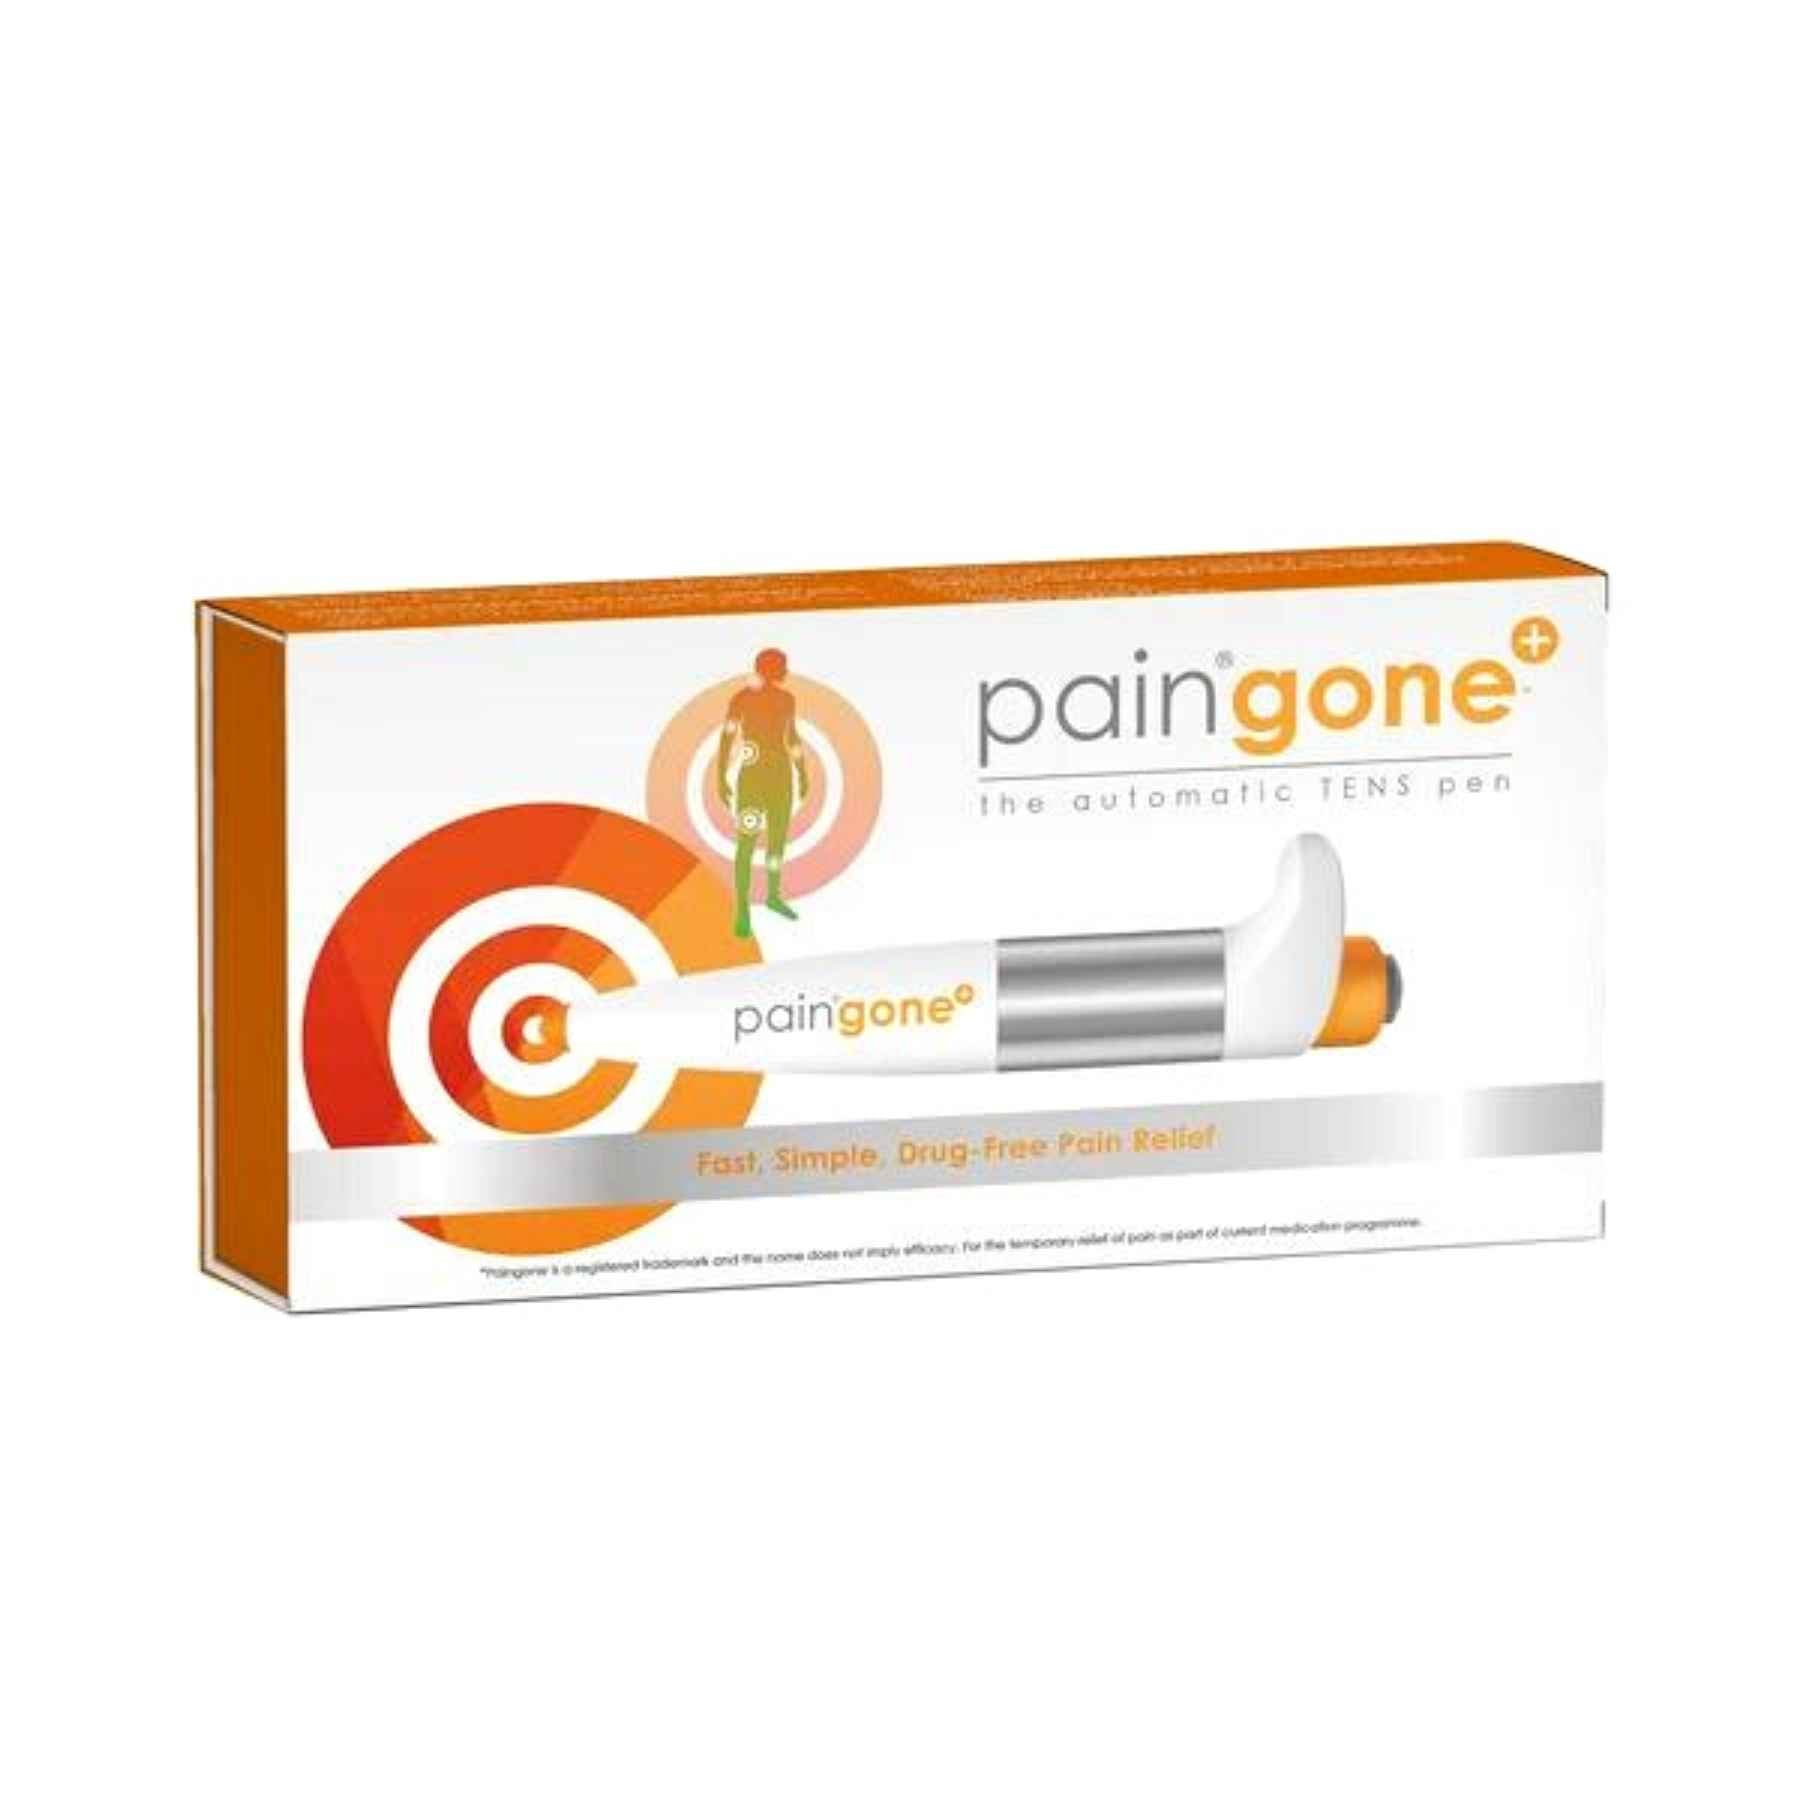 Paingone Plus: The Automatic TENs Pen